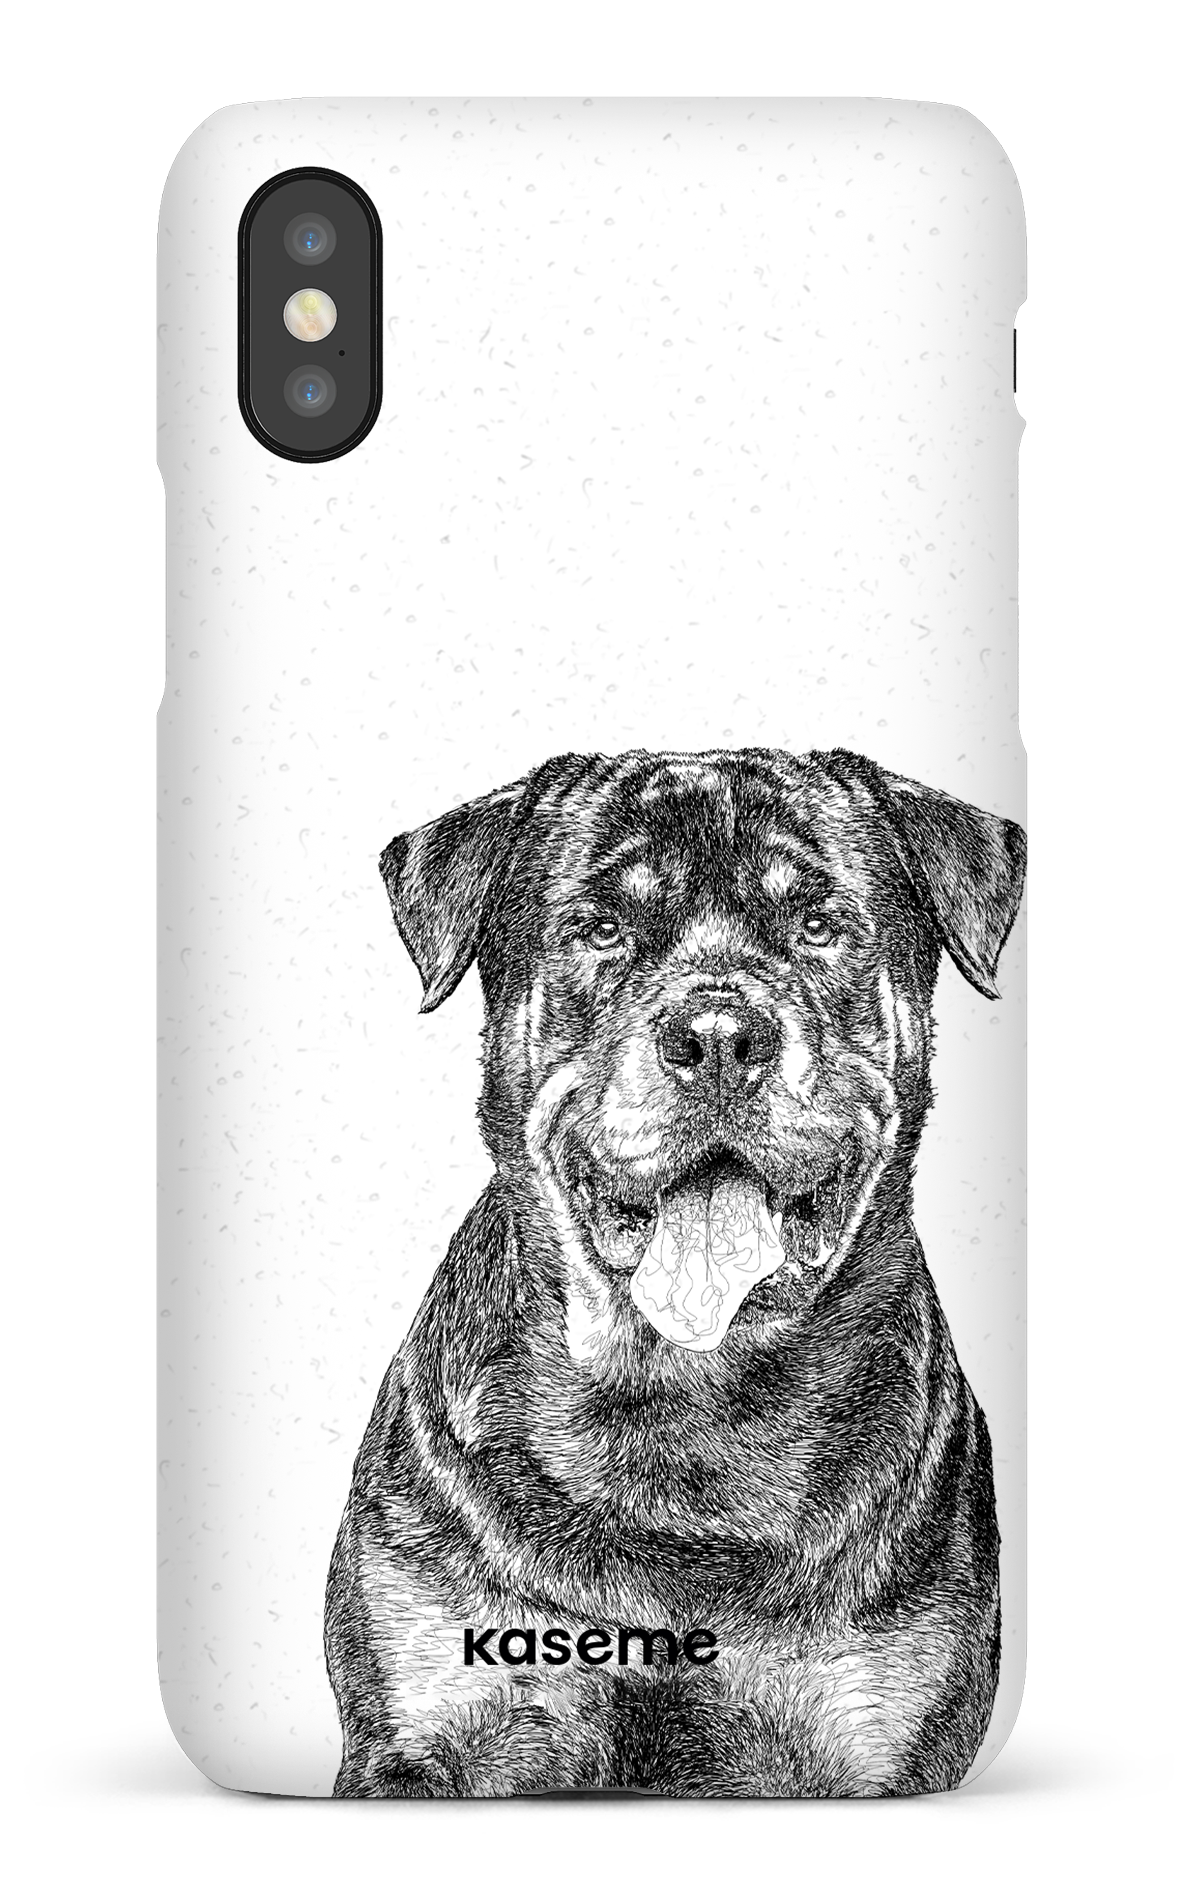 Rottweiler - iPhone X/Xs